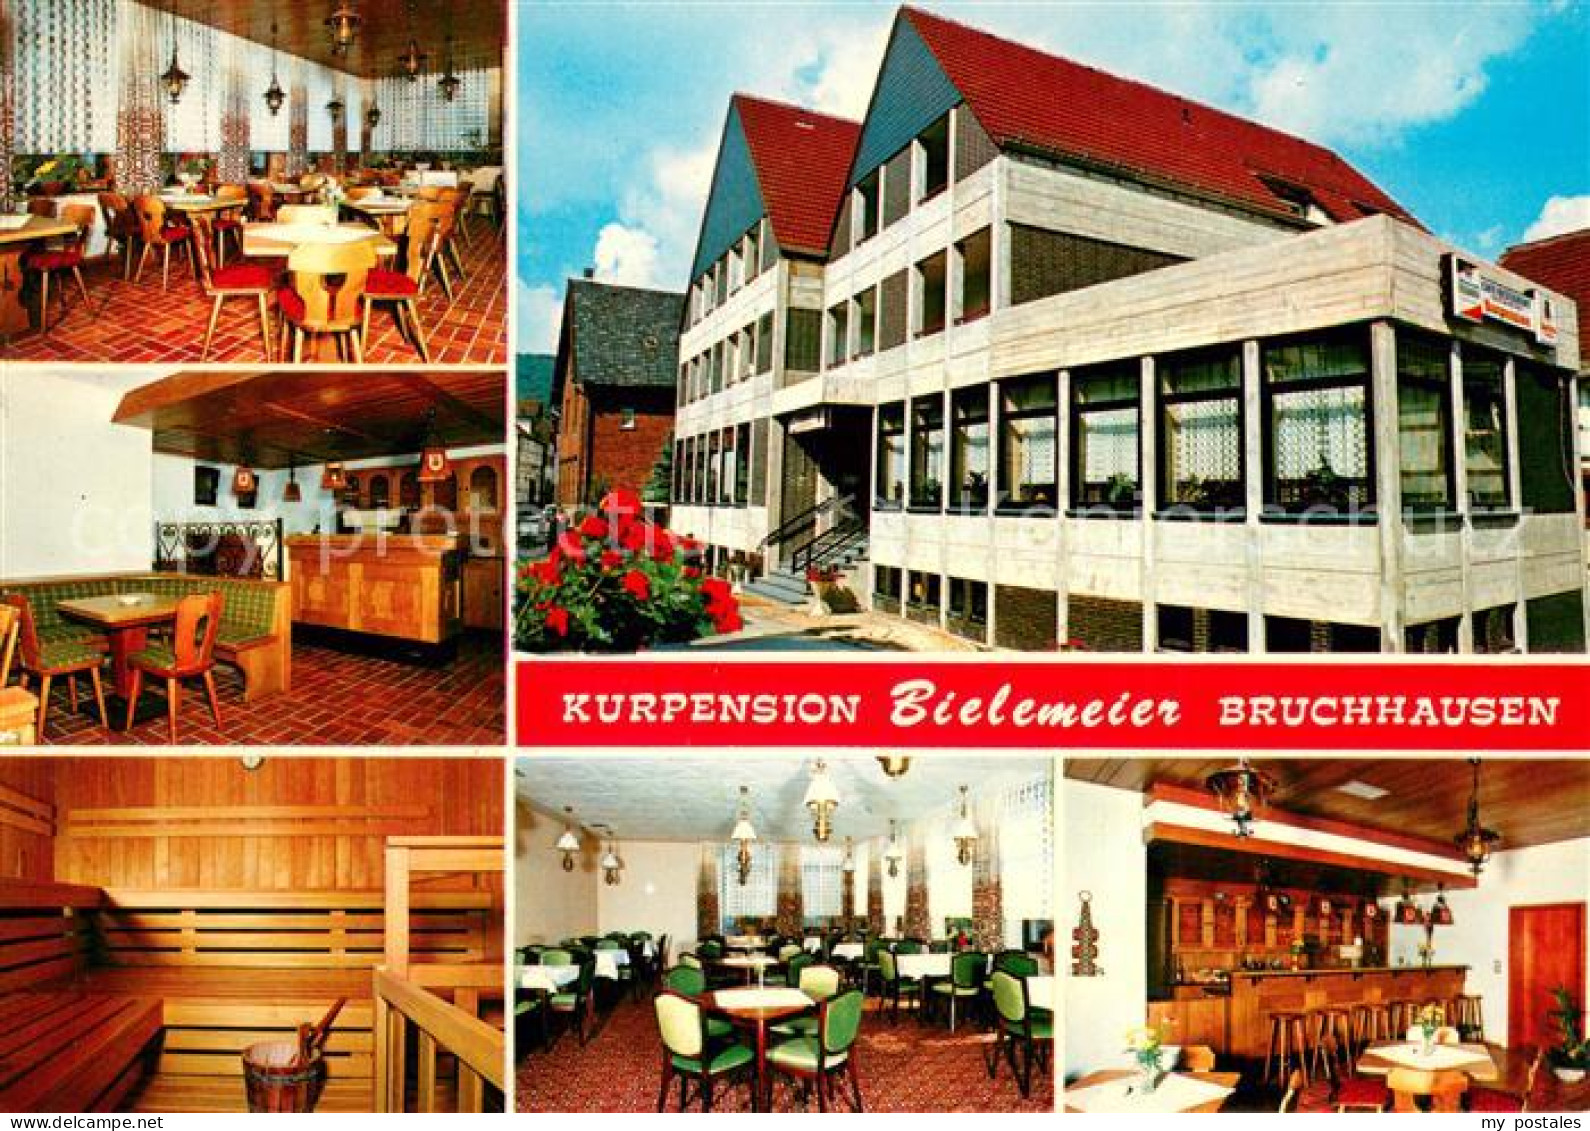 73662625 Bruchhausen Hoexter Kurpension Hotel Restaurant Cafe Bielemeier Bruchha - Hoexter